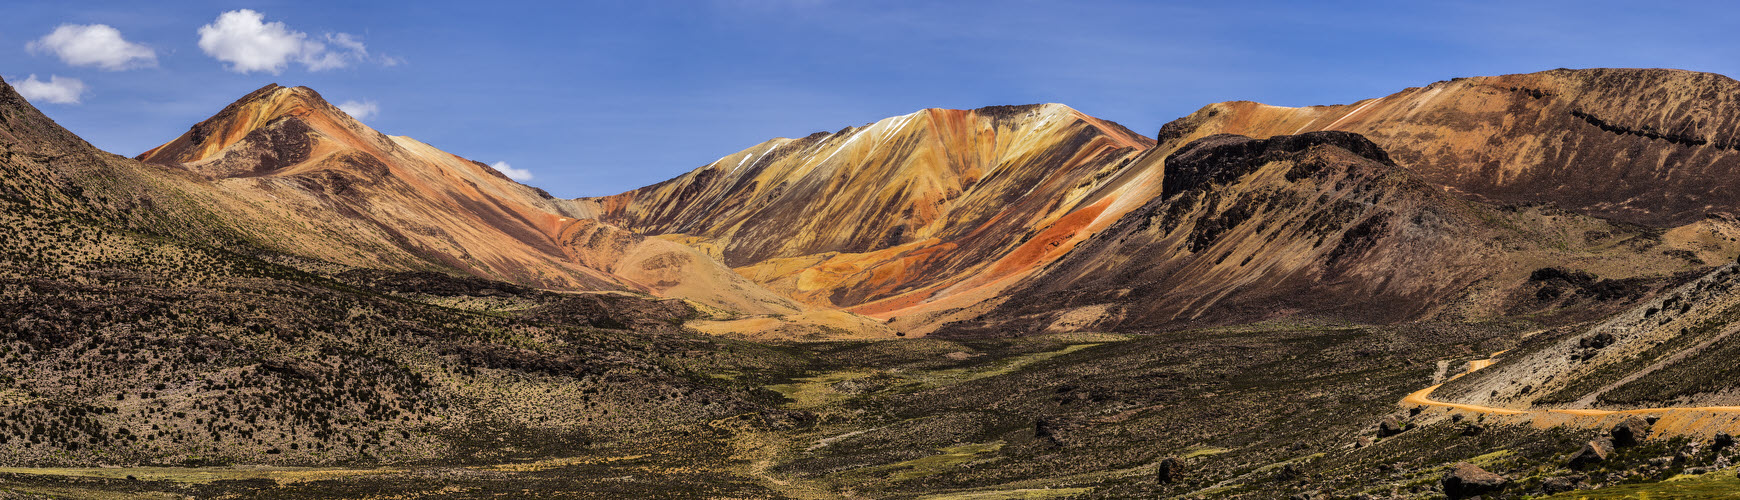 Farbige Berge bei Suriplaza, im Dreiländereck Chile/Peru/Bolivien